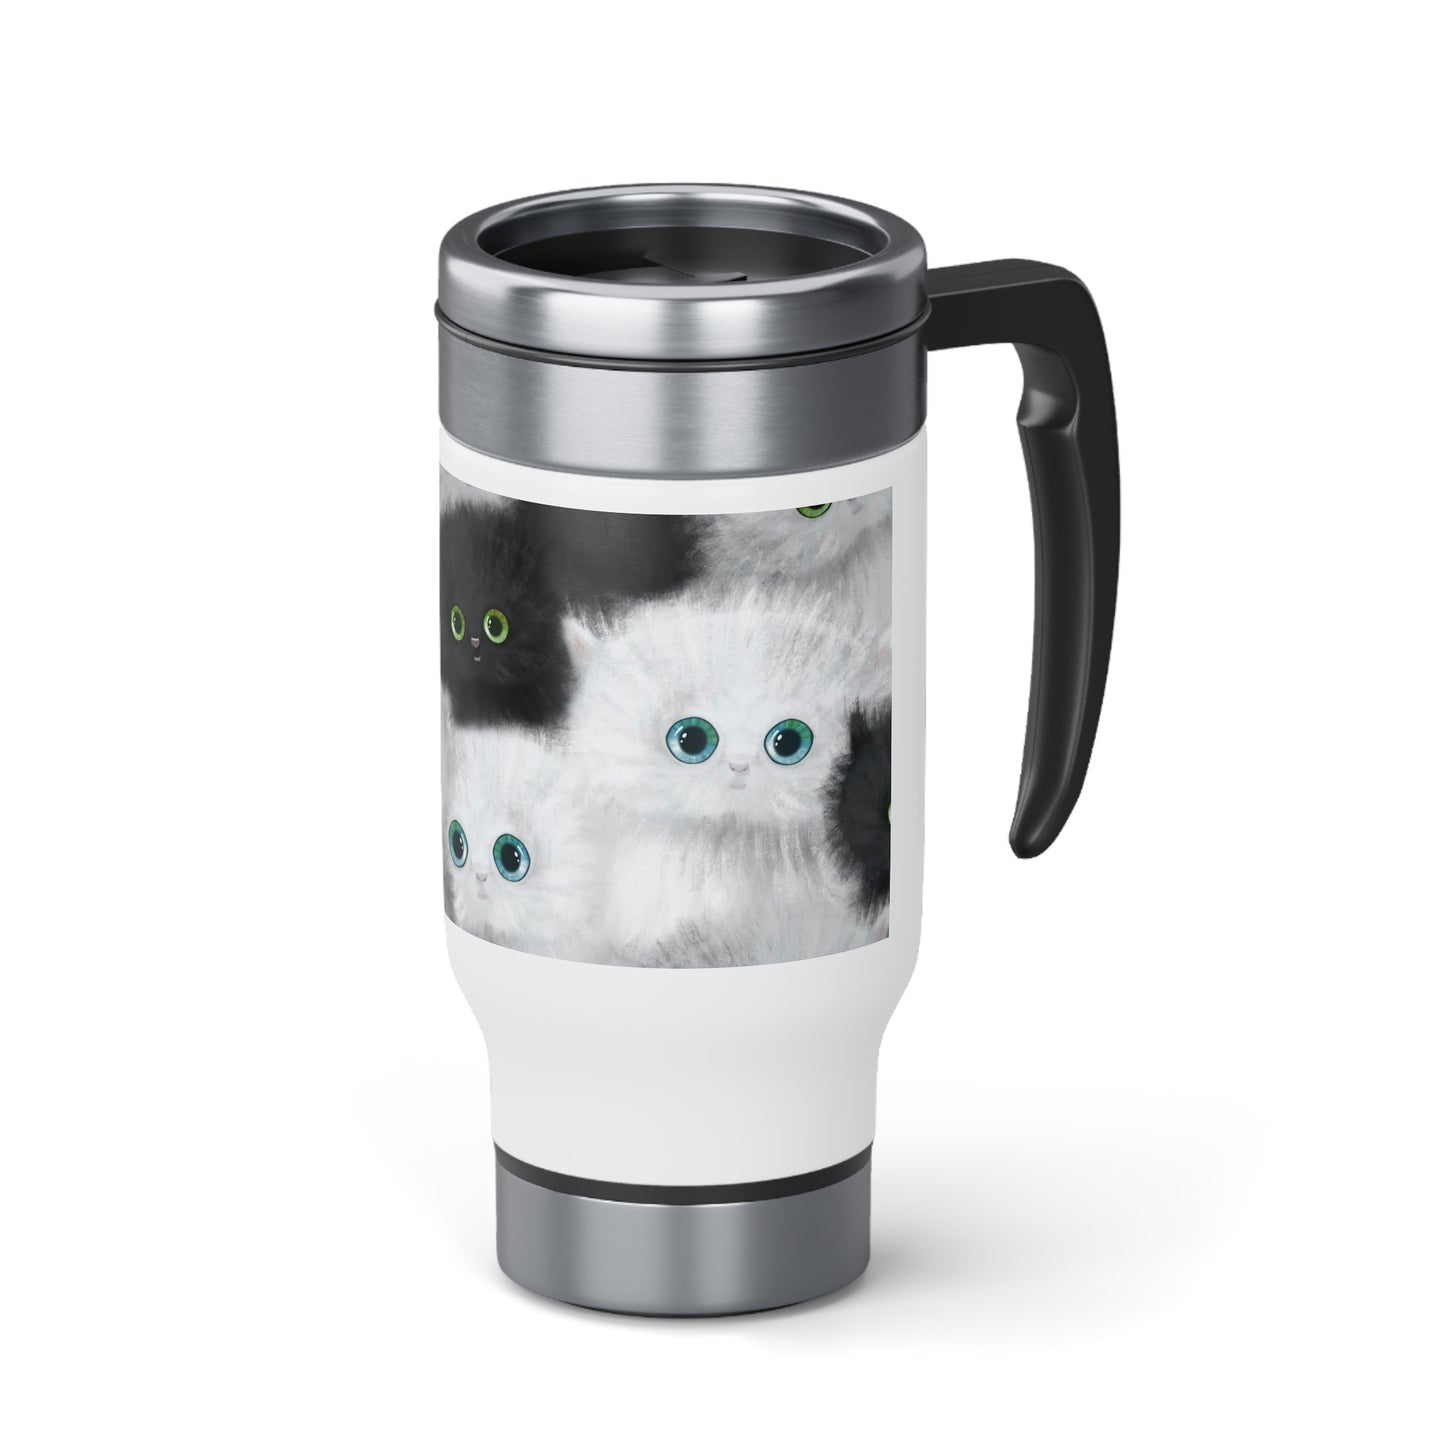 Black & White Kittens Travel Mug